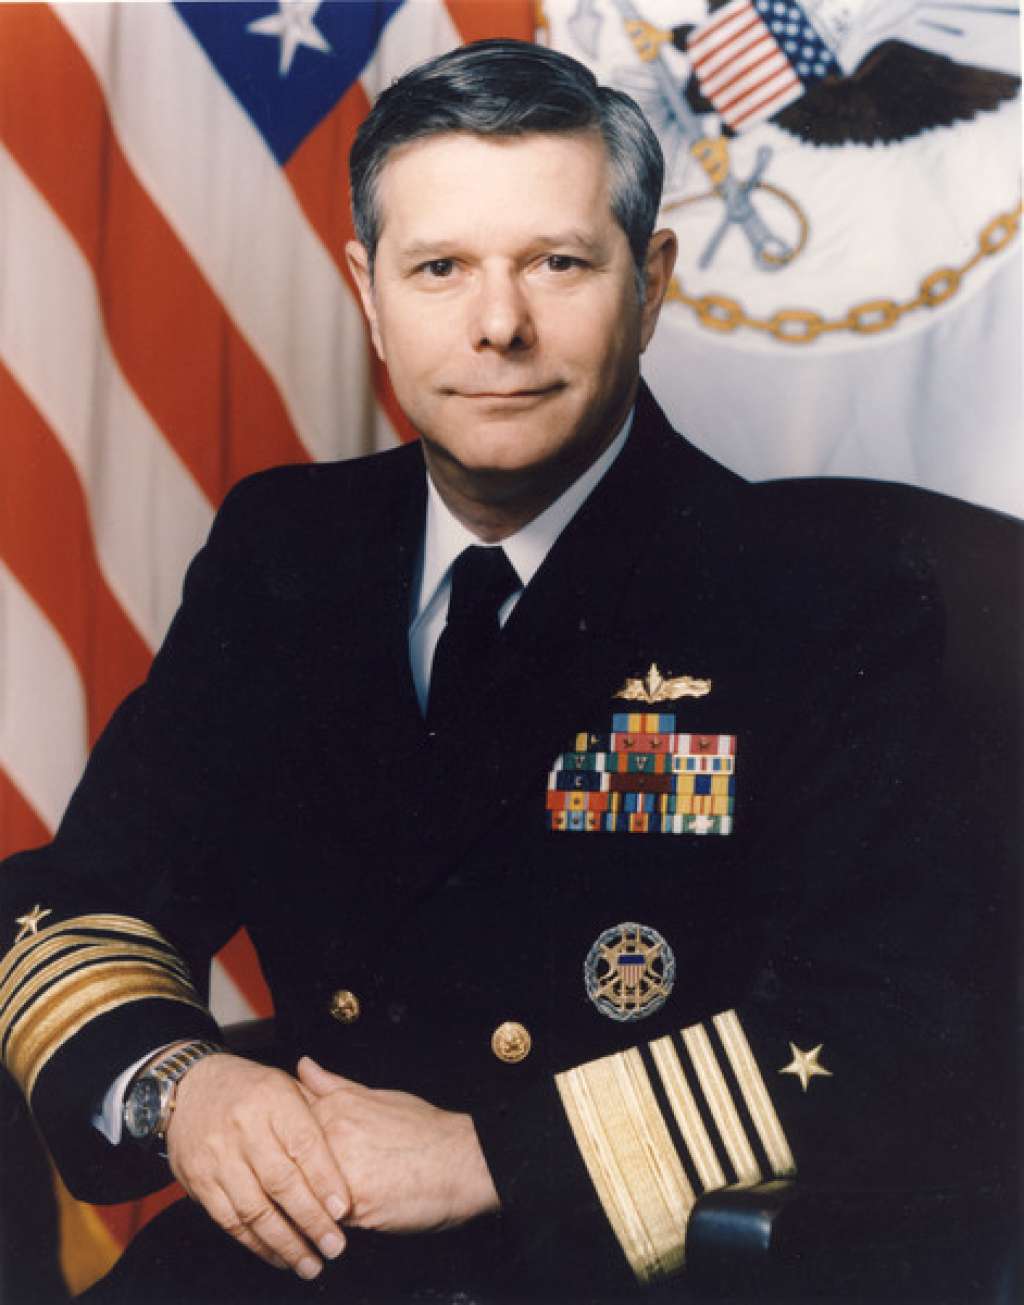 navy war college chief under investigation